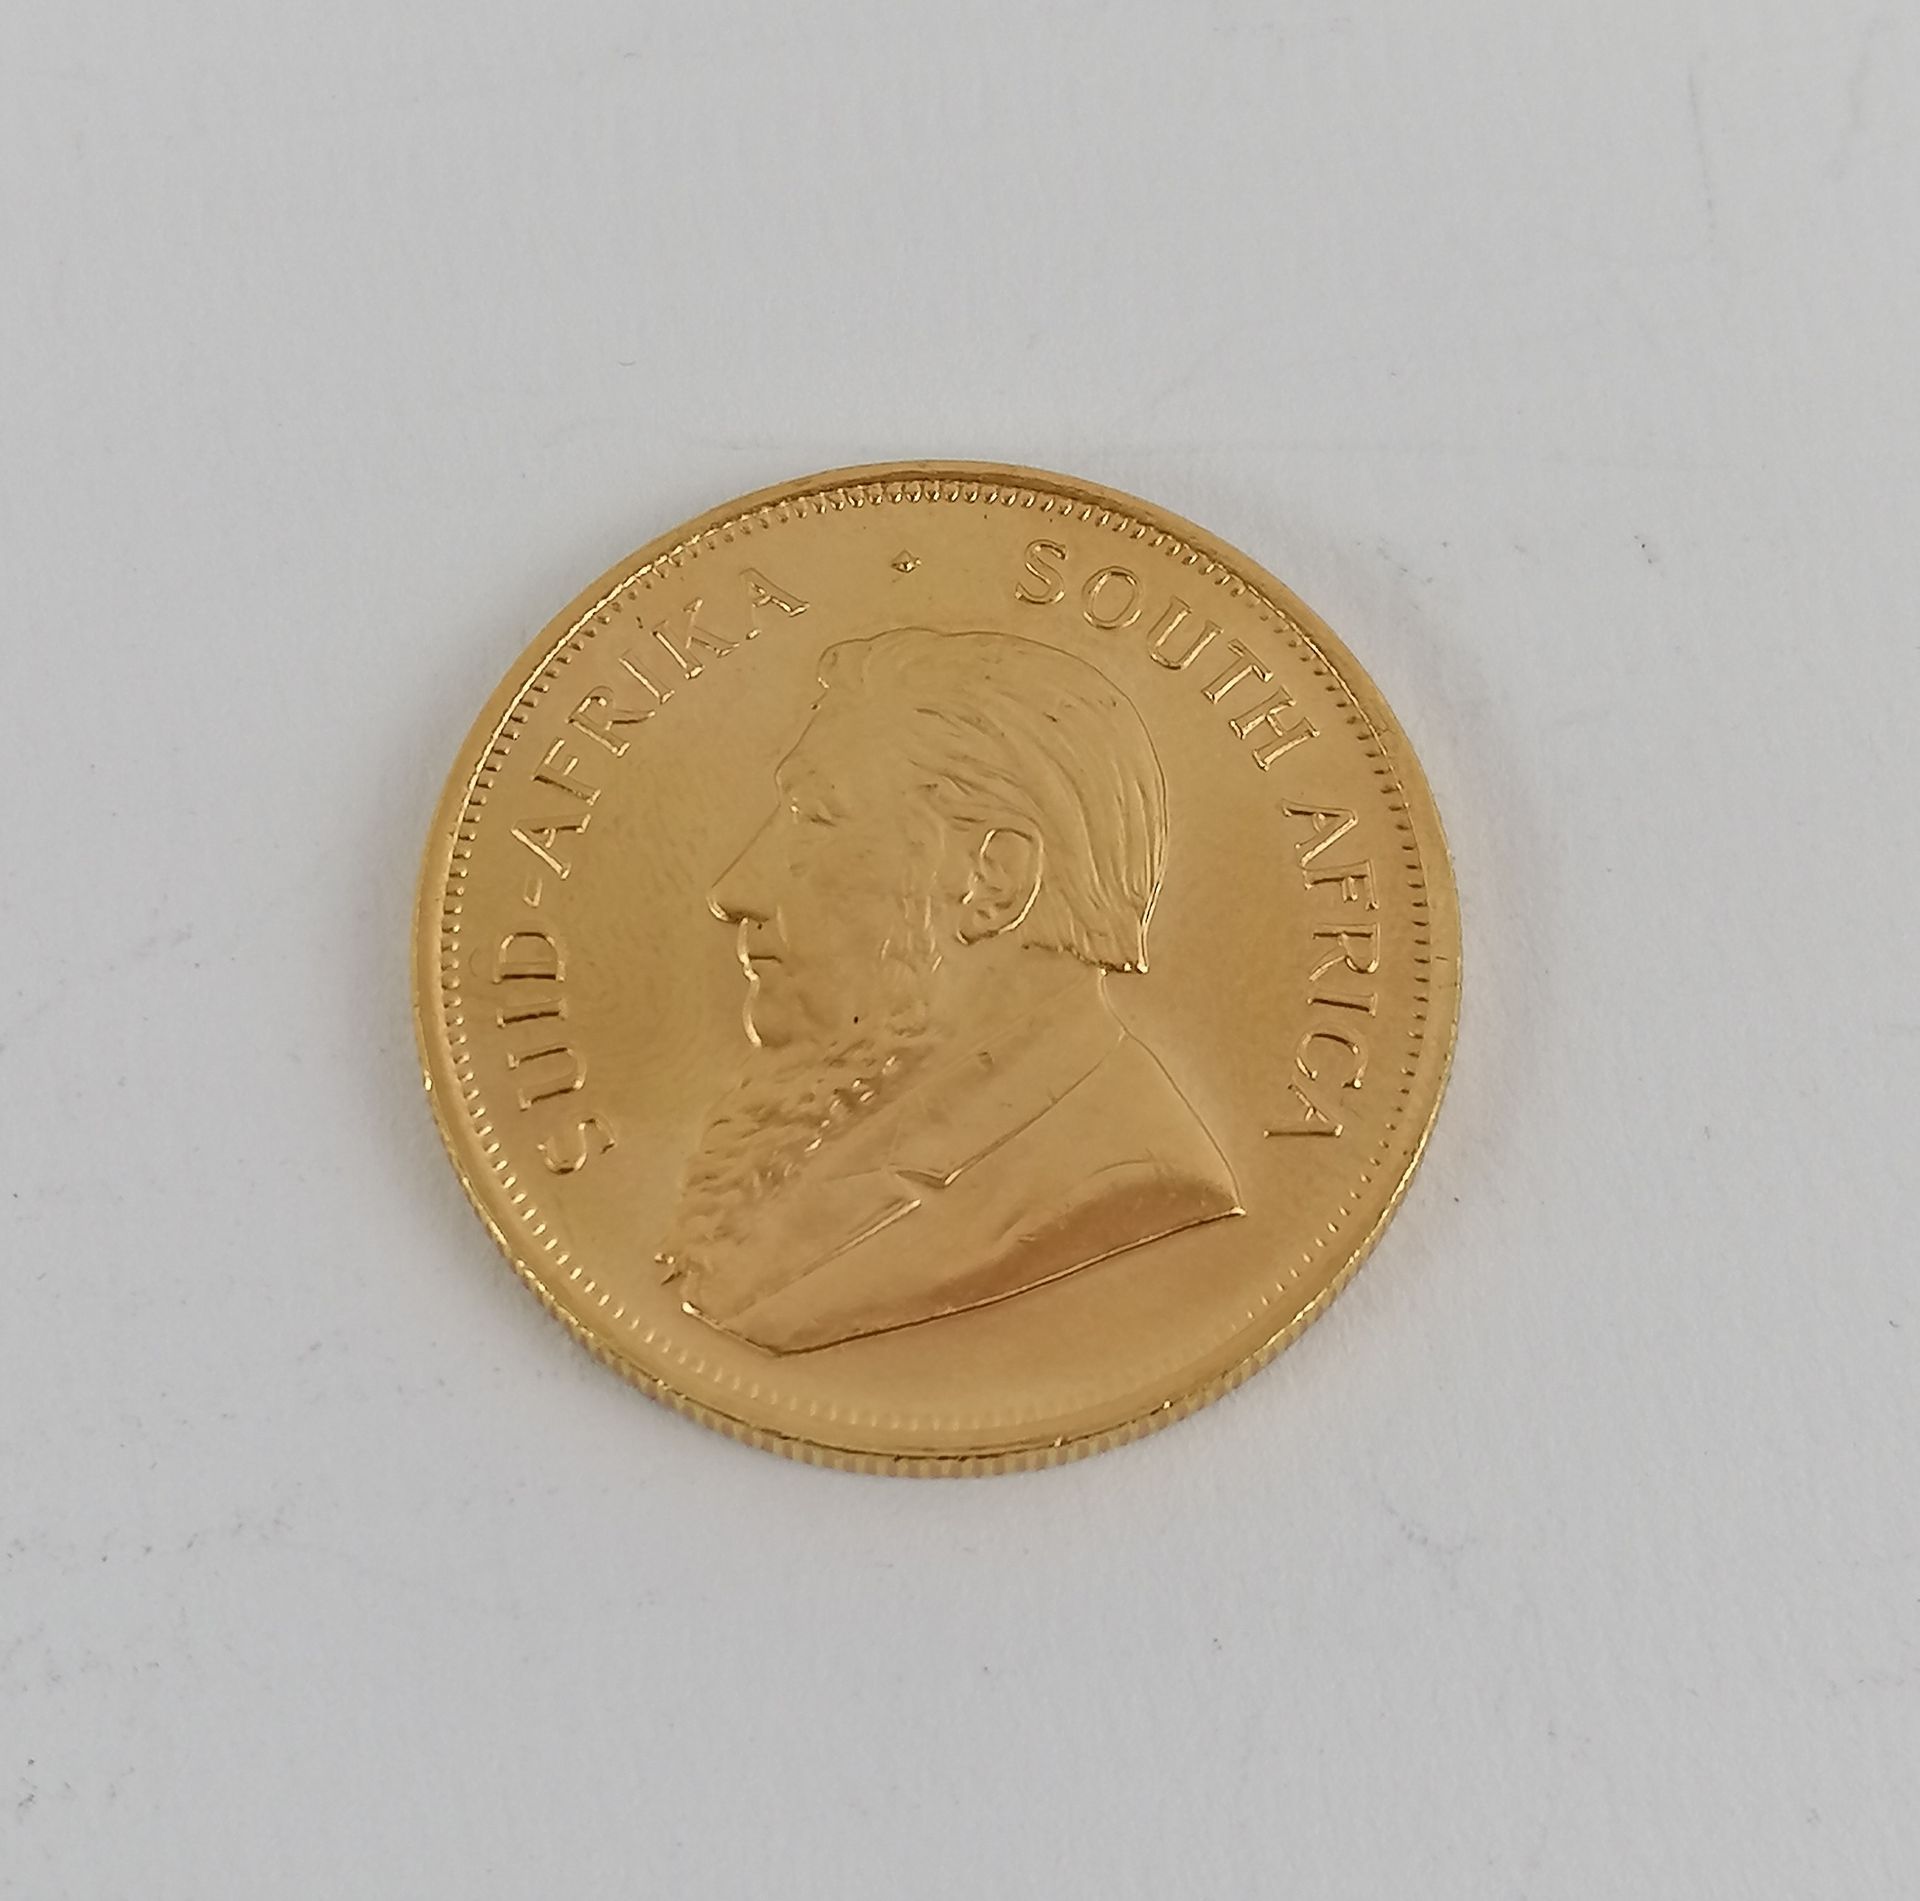 Null Una moneda de oro Sudáfrica Kruggerand 1983.
Peso : 34 g